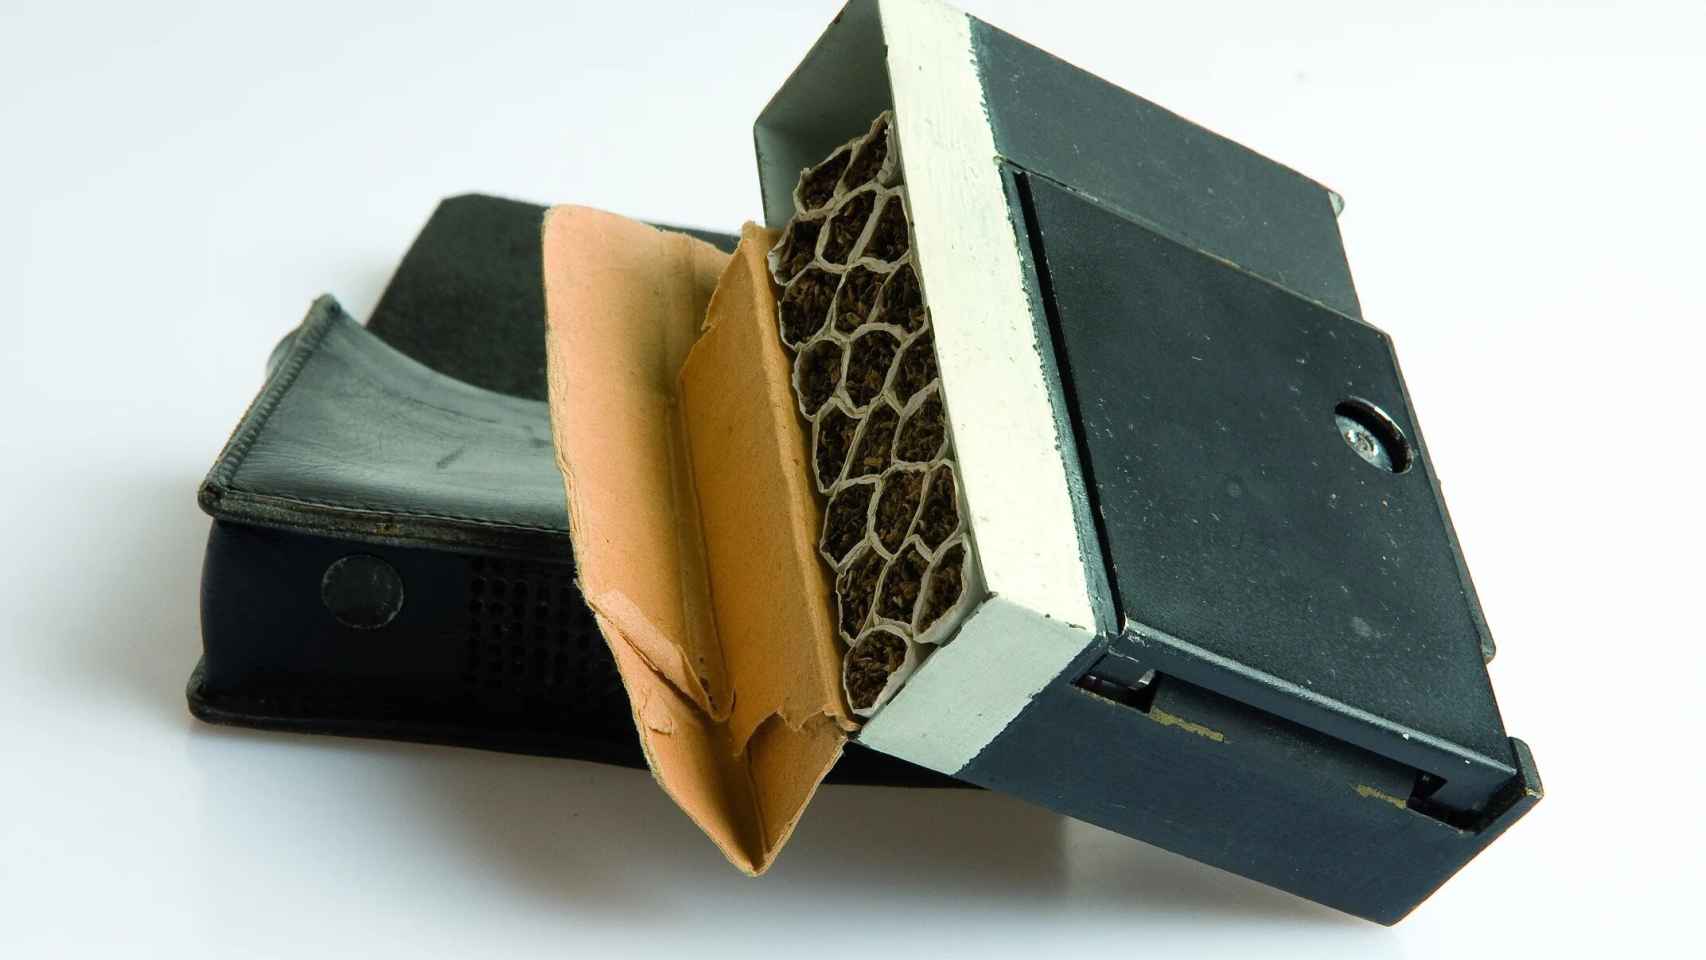 Minicámara fotográfica automática “Tessina” de 35mm escondida en un paquete de cigarros, utilizada por la SDECE durante la Guerra fría, 1960-1980. DGSE- Ministère des Armées, Francia.